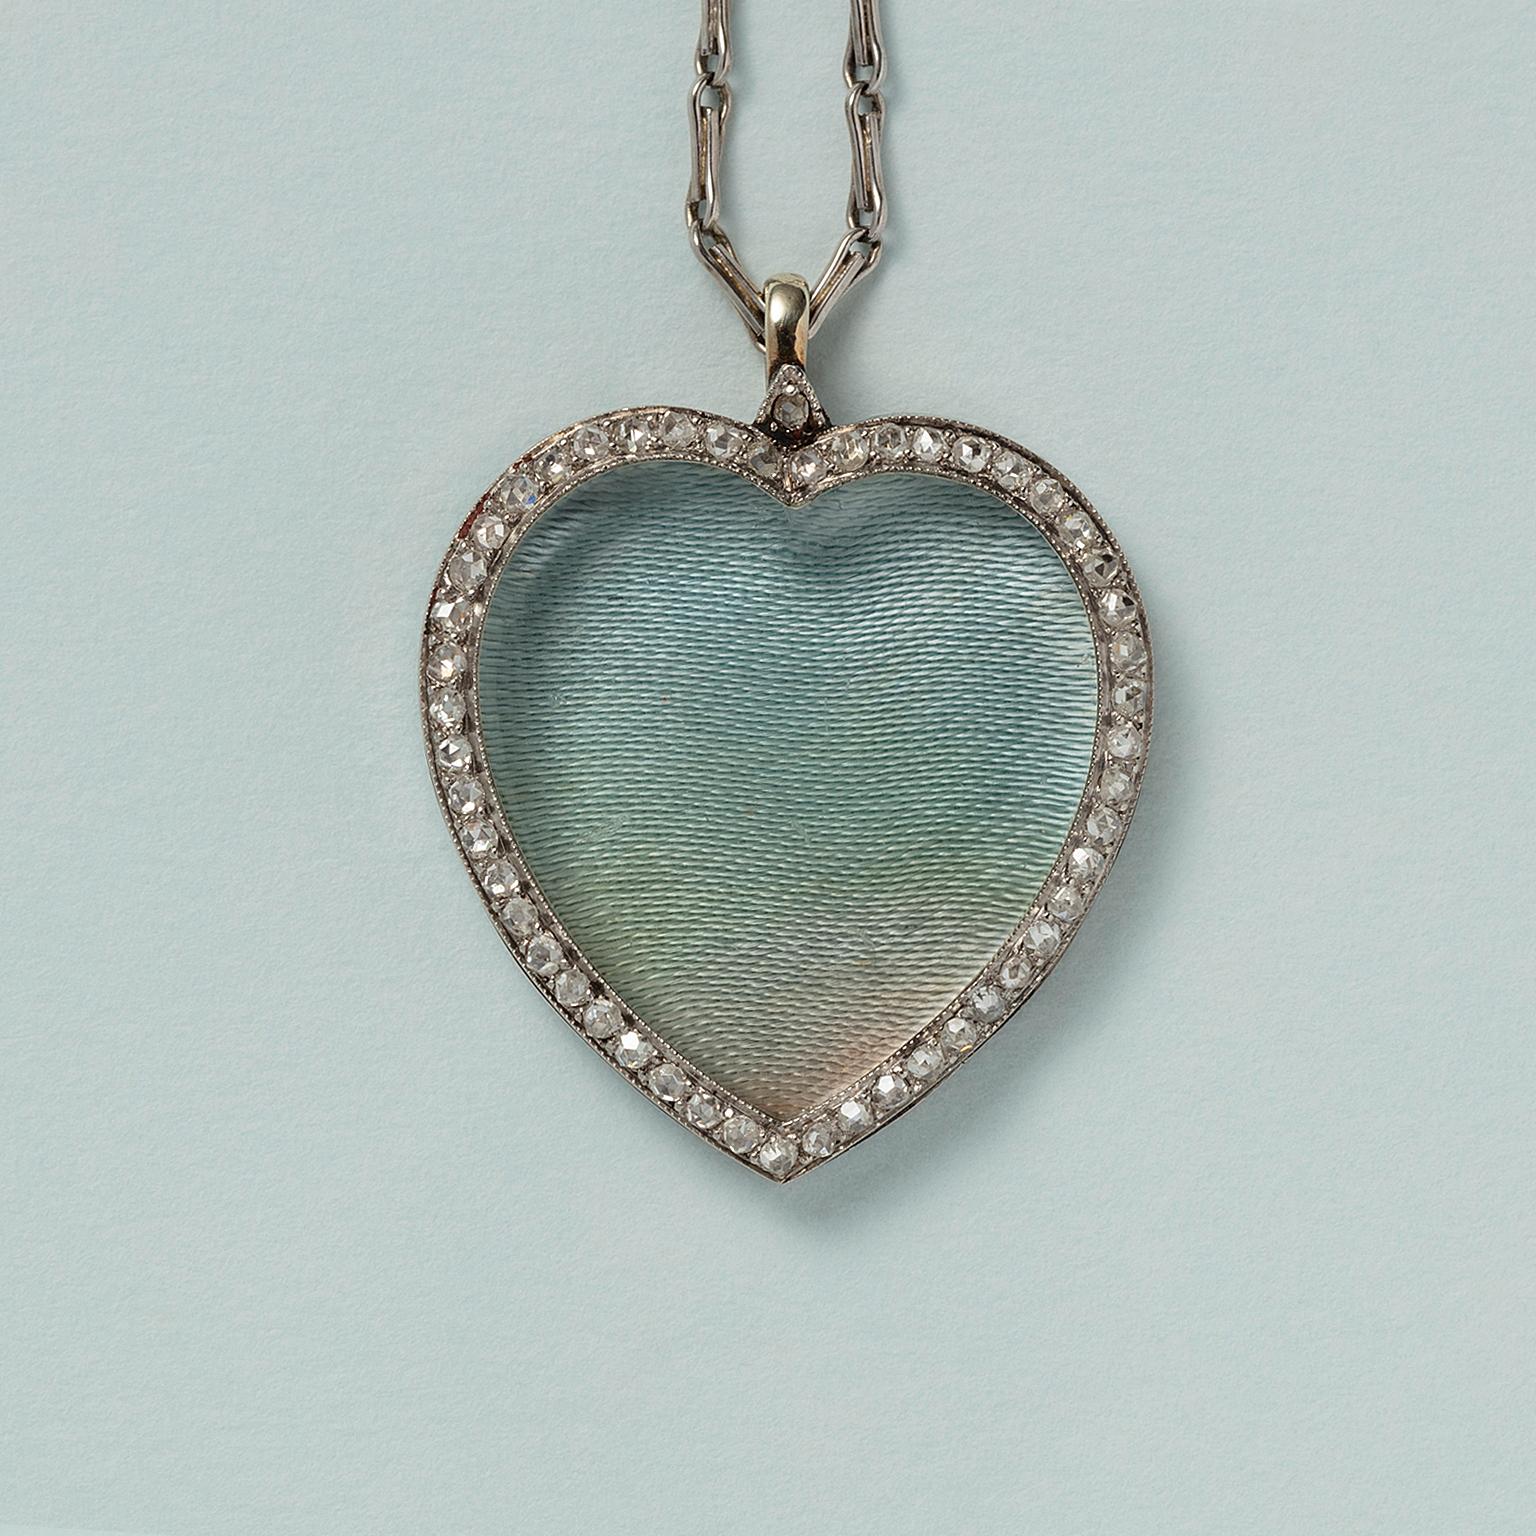 Médaillon édouardien en platine en forme de cœur avec une bordure sertie de diamants taillés en rose (environ 0,6 carat), vers 1910.

poids : 9,3 grammes
dimensions : 2,8 x 2,7 cm